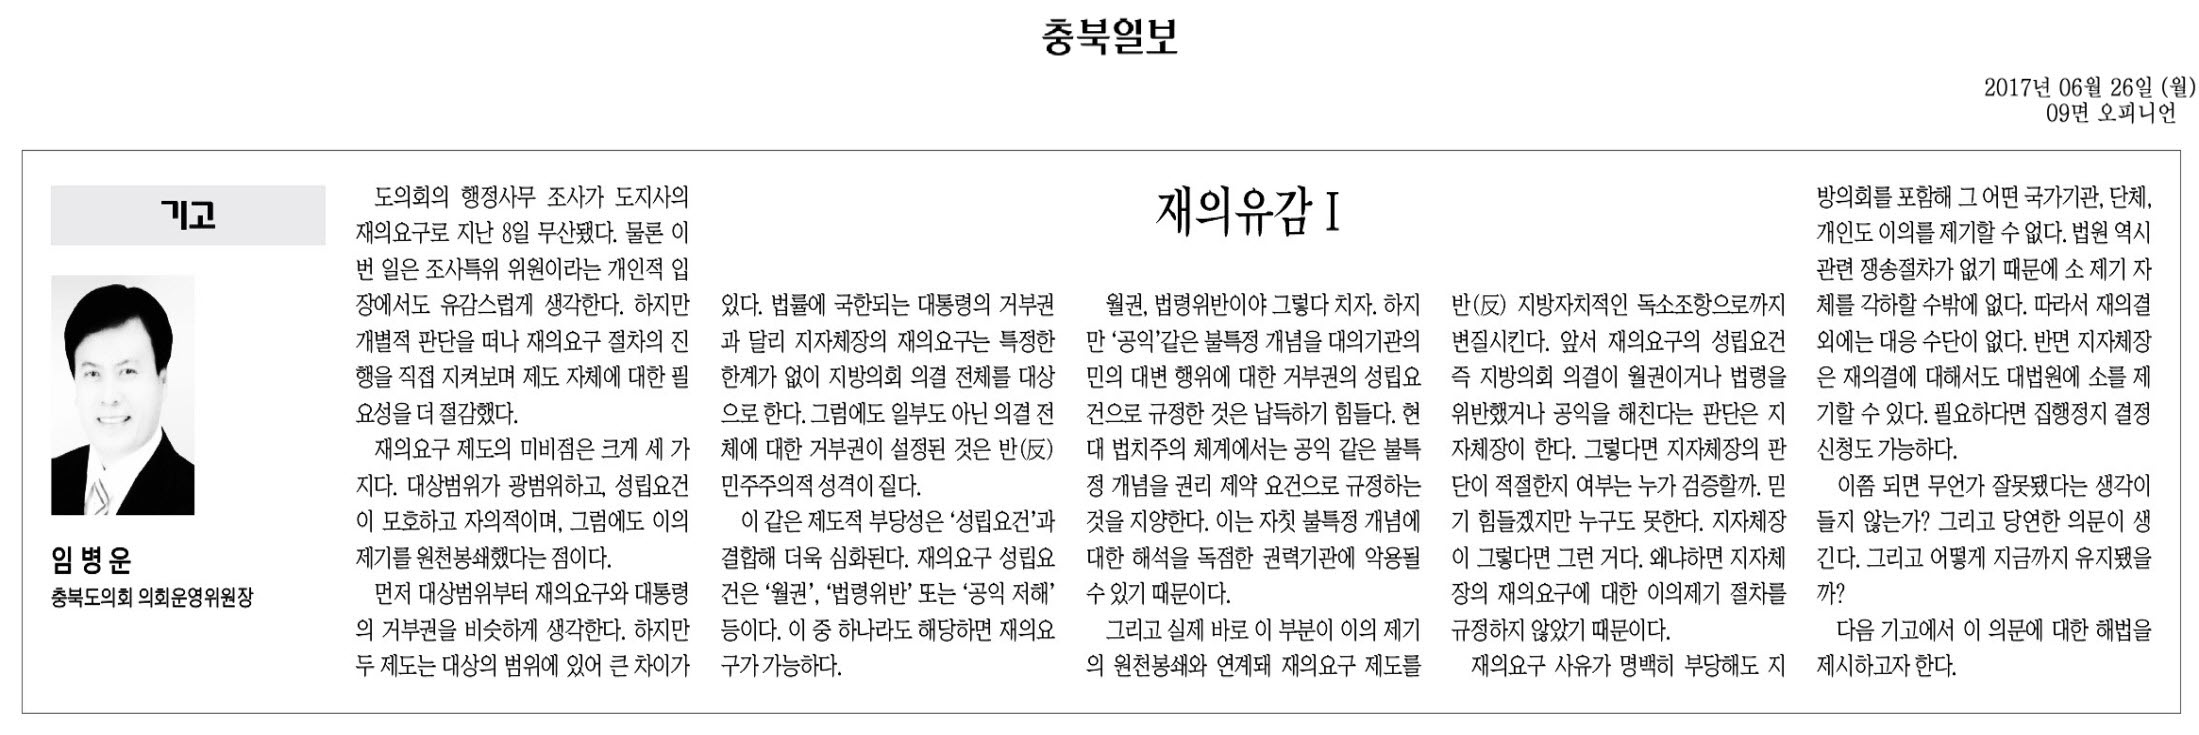 재의유감I-임병운 의원(충북일보 2017년 6월 26일) - 1